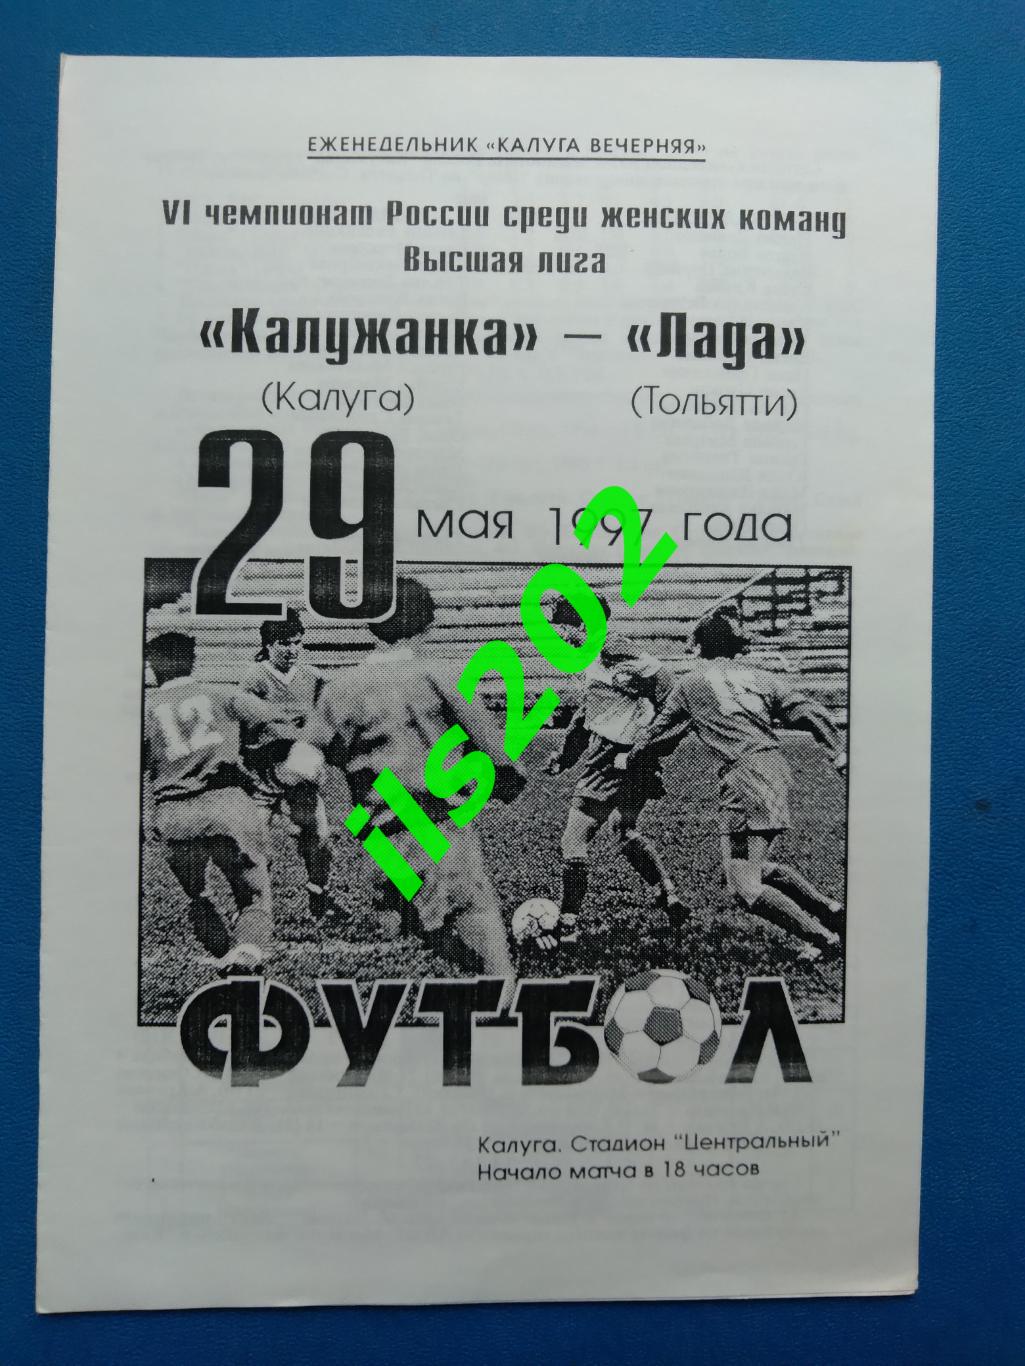 женский футбол Калужанка Калуга - Лада Тольятти 1997